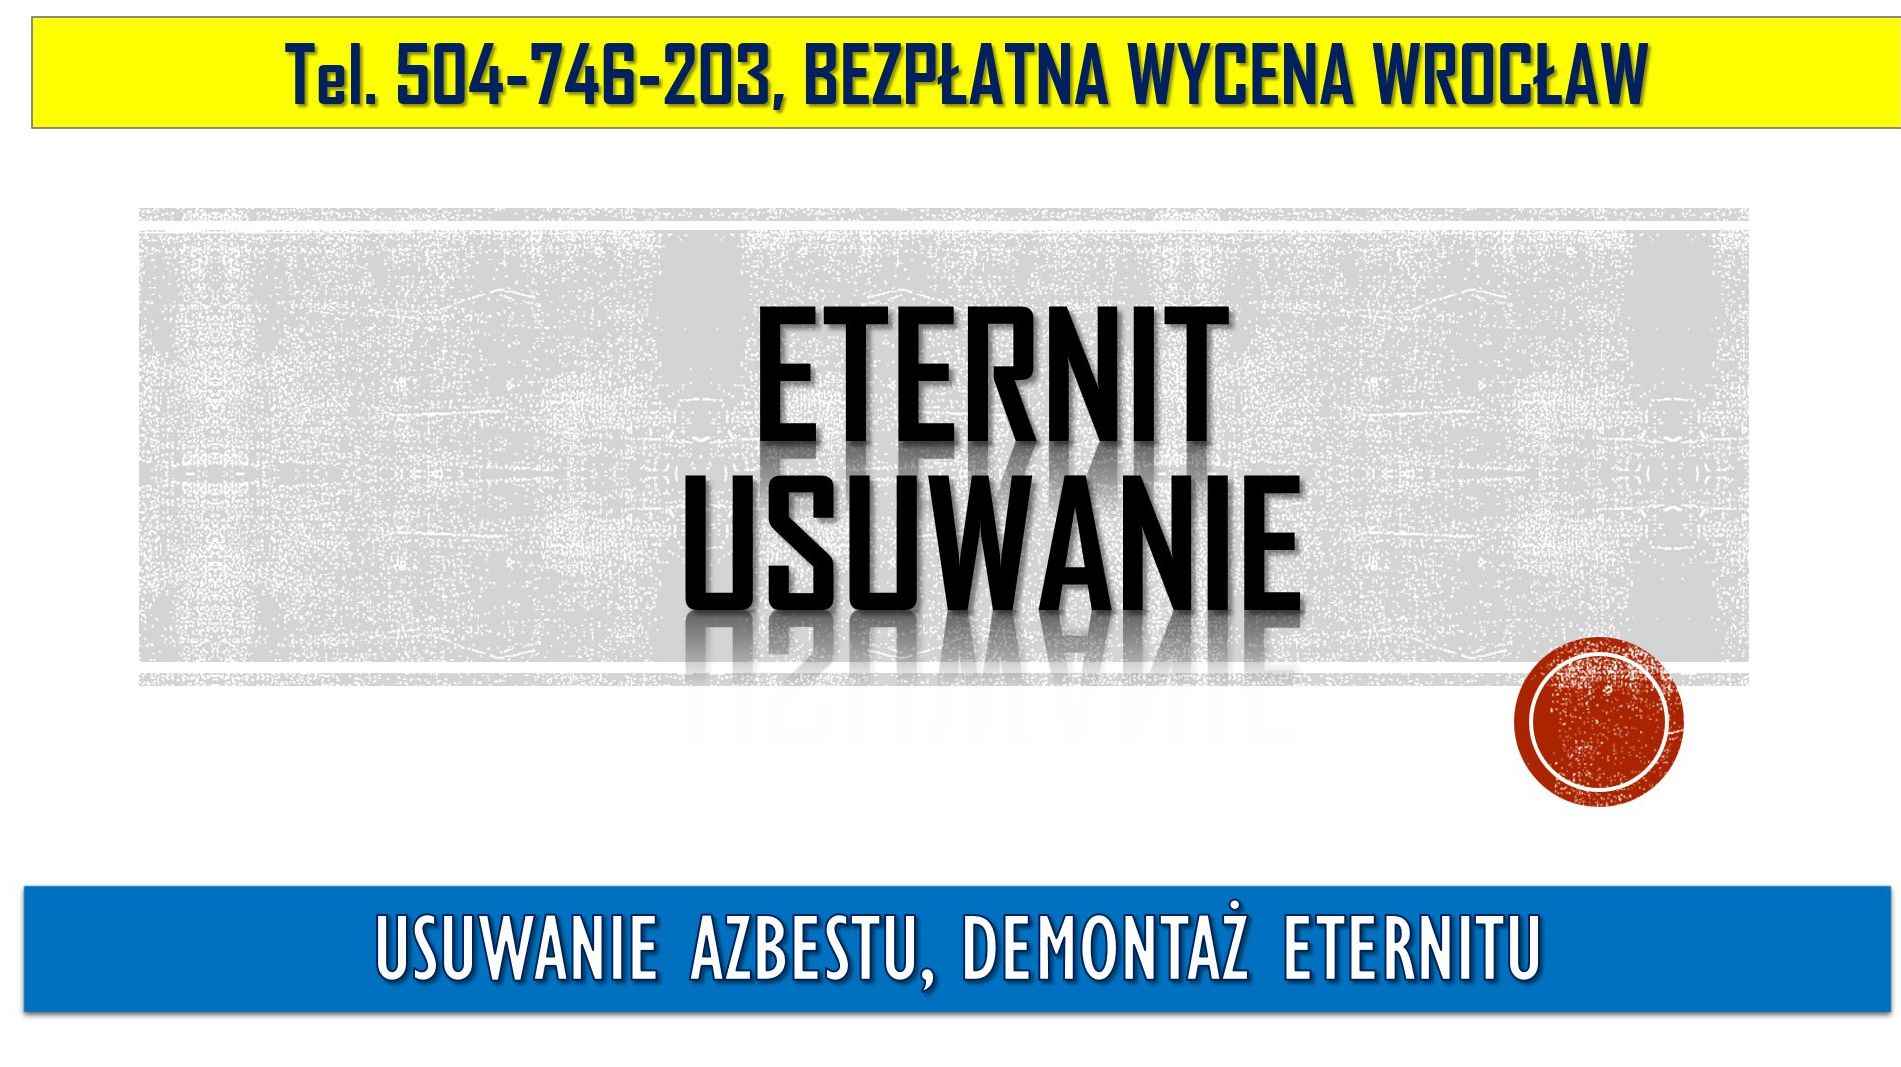 Usuwanie azbestu, Wrocław tel. 504-746-203, cena, demontaż eternitu. Psie Pole - zdjęcie 4